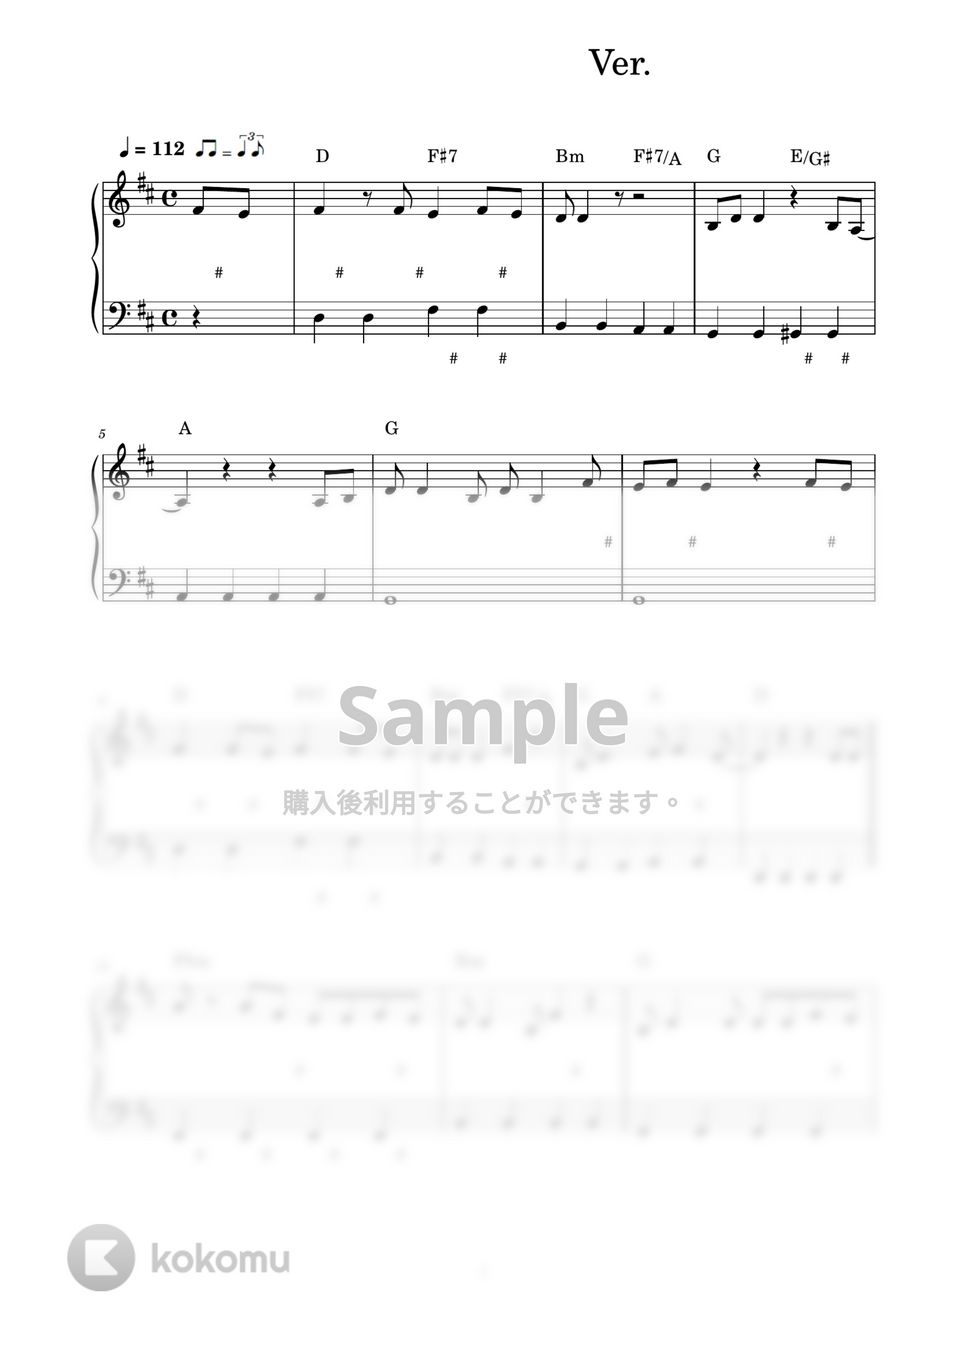 ハチワレ(CV:田中 誠人) - ひとりごつ～バンドver. (ピアノ楽譜 / かんたん両手 / 歌詞付き / ドレミ付き / 初心者向き) by piano.tokyo